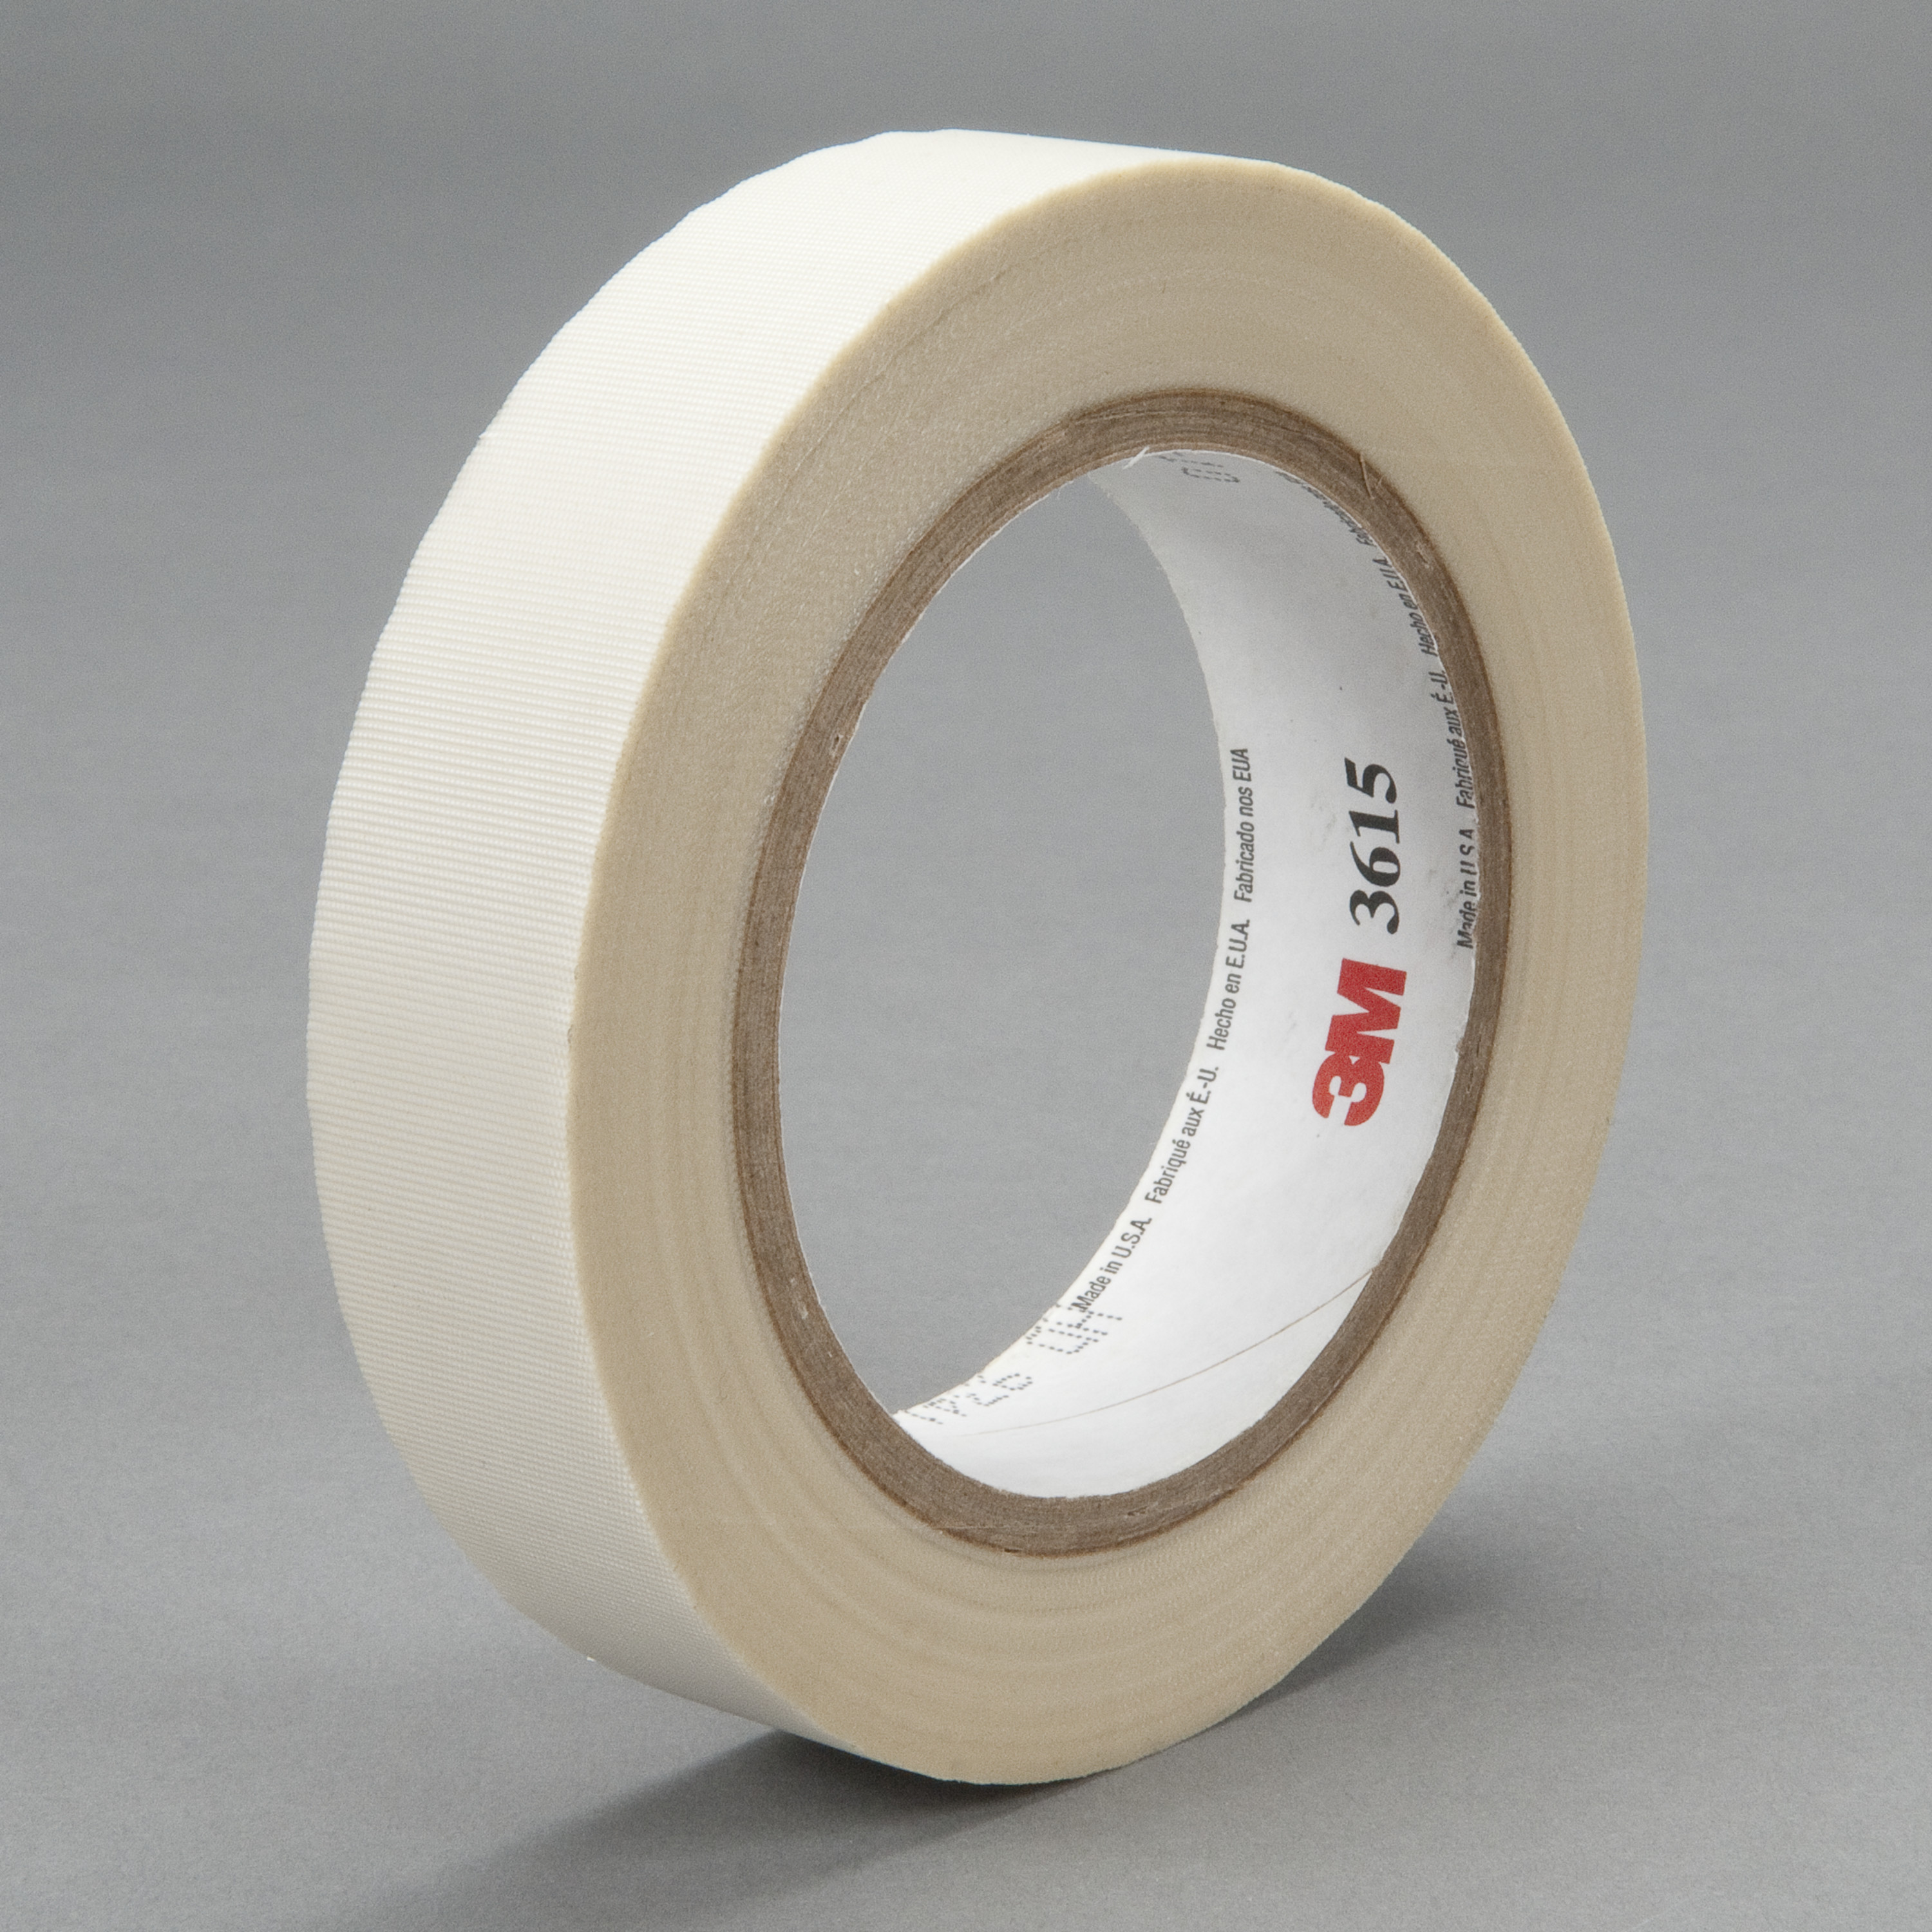 3M™ Glass Cloth Tape 3615, White, 3/4 in x 36 yd, 7 mil, 48 rolls per
case